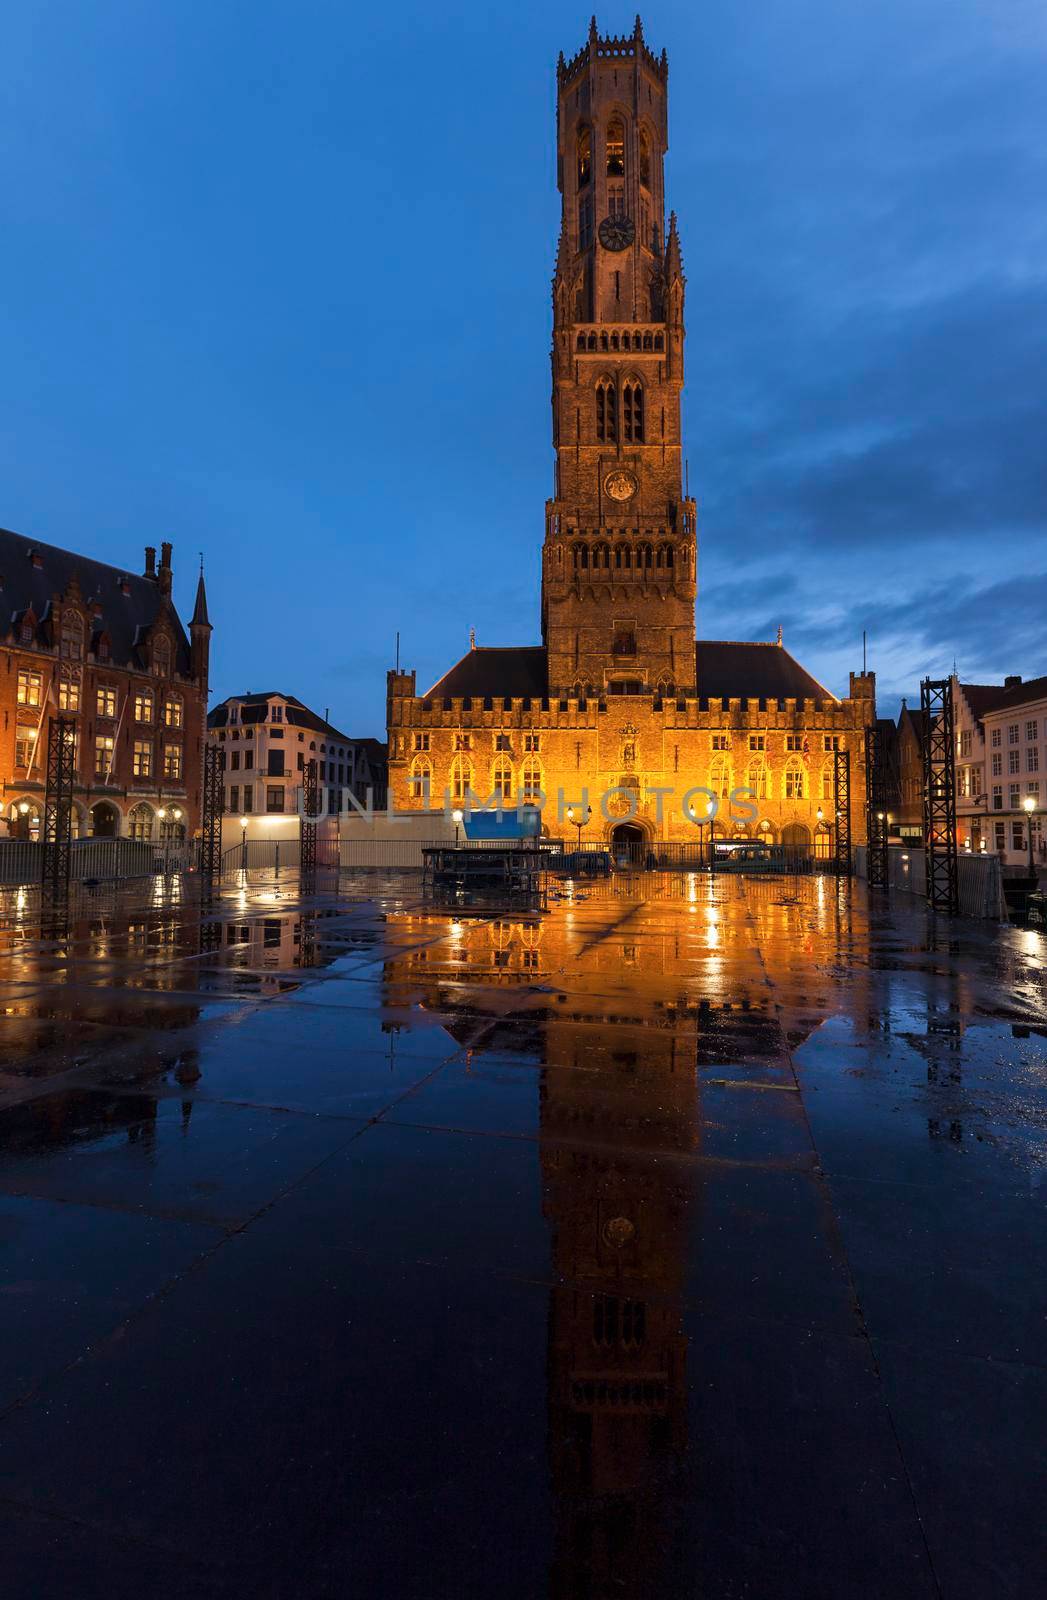 Belfry of Bruges reflected during the rain. Bruges, Flemish Region, Belgium